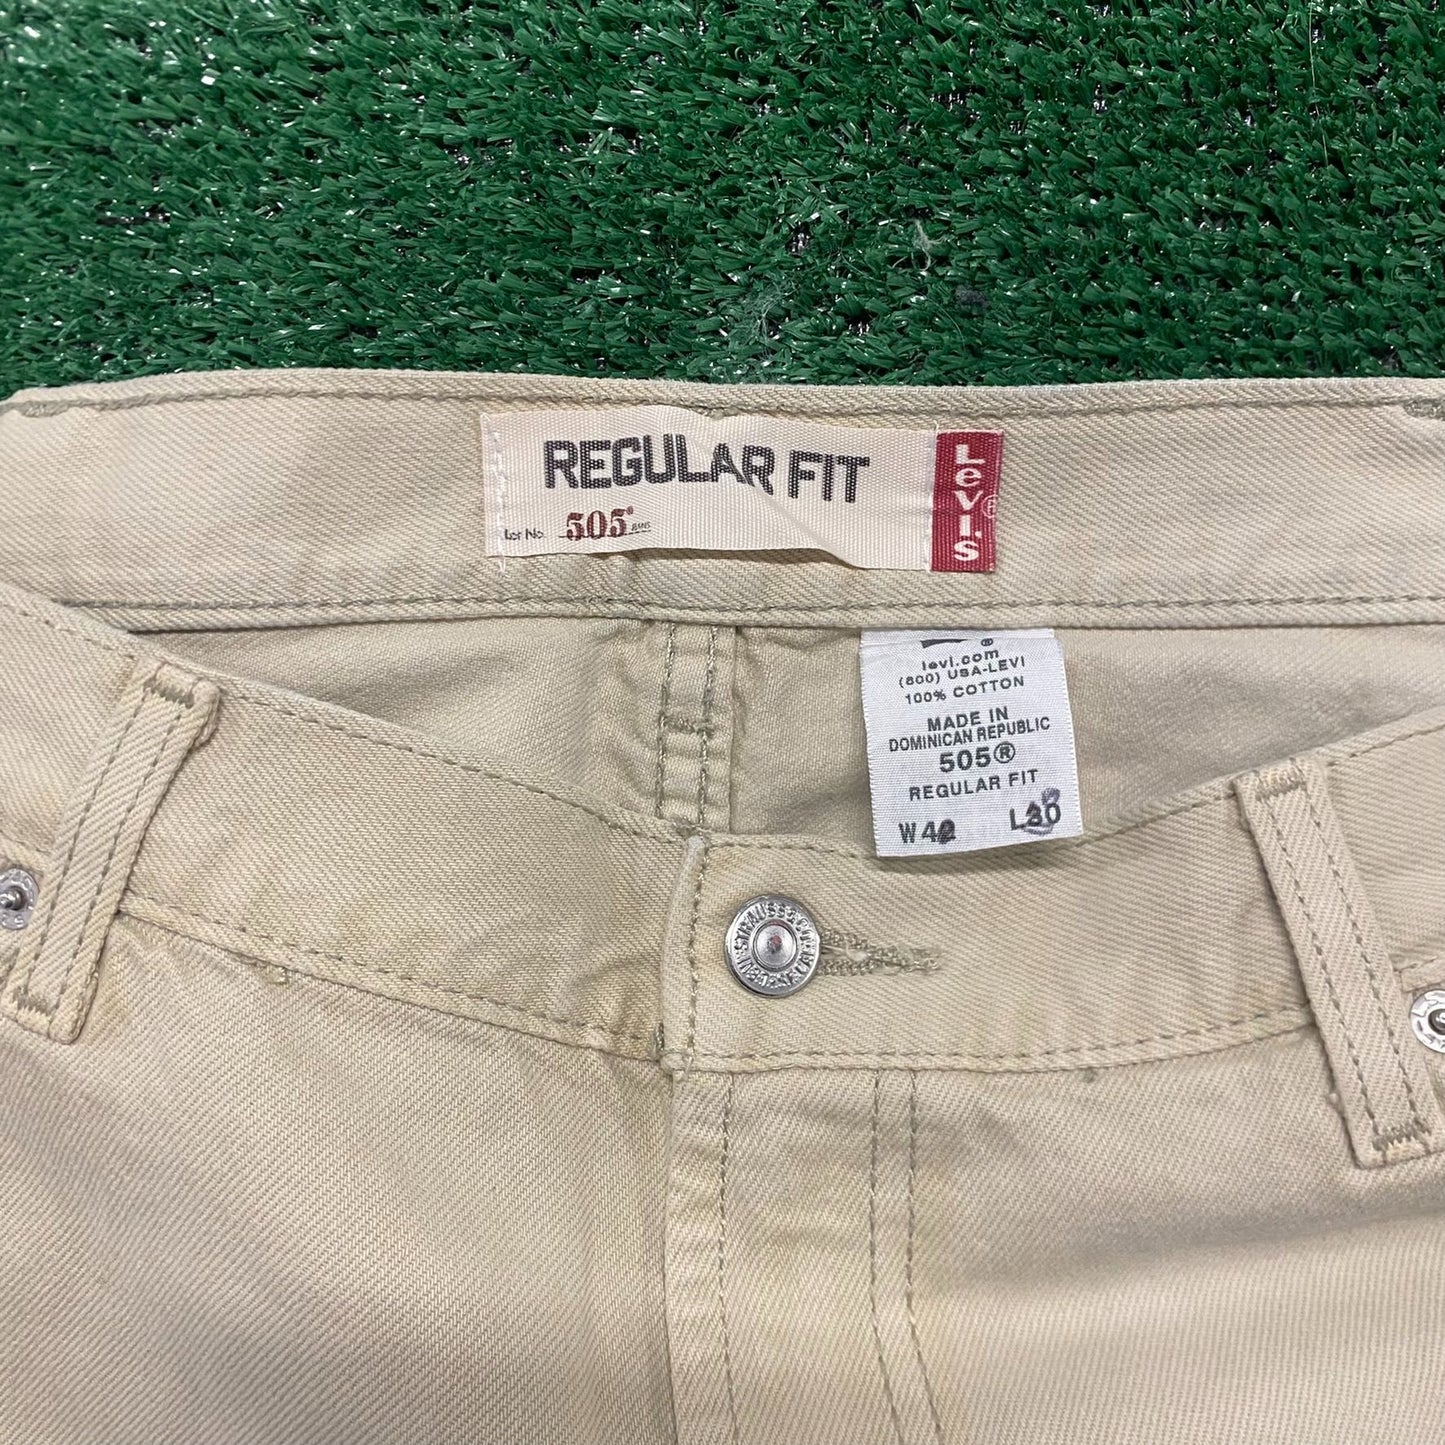 Levi's 505 Straight Fit Beige Vintage Denim Jeans Pants